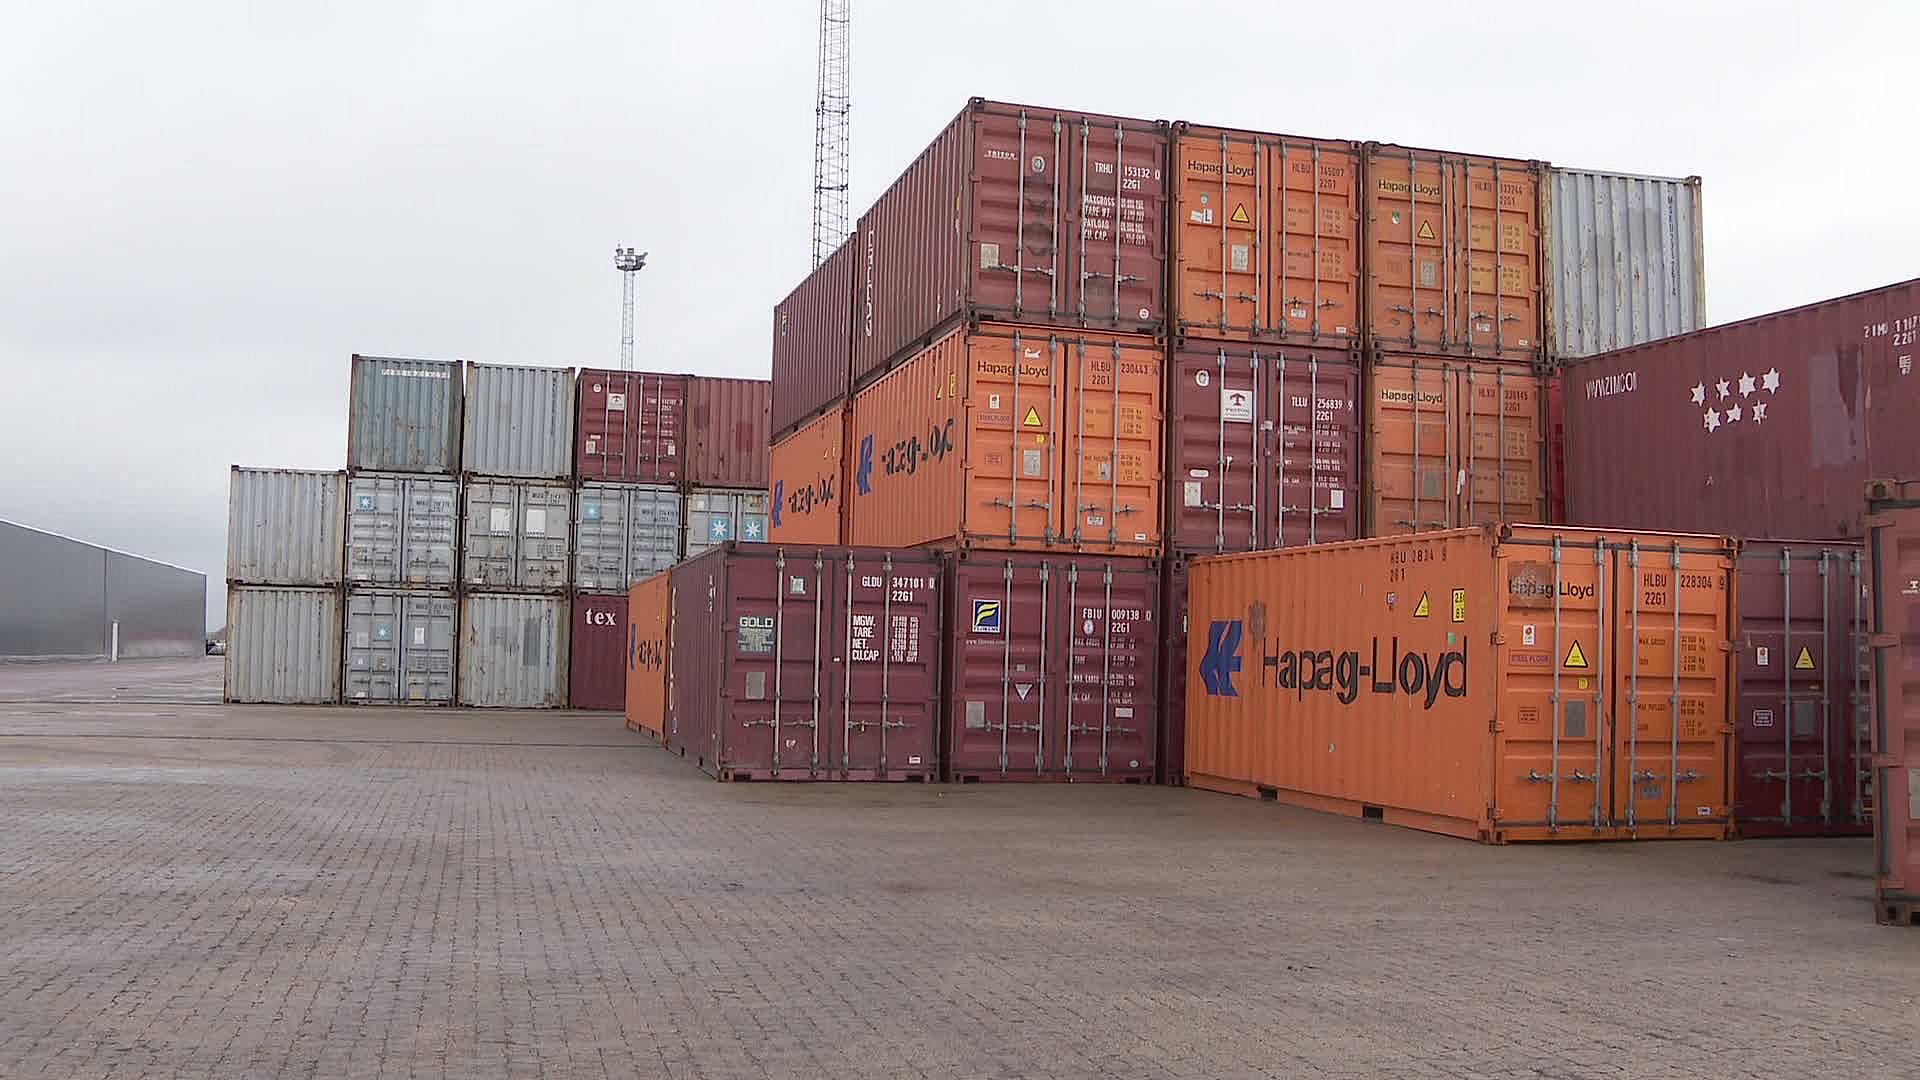 Rod med containerskibene giver dyrere priser på iPhones, og cykler | TV2 Nord